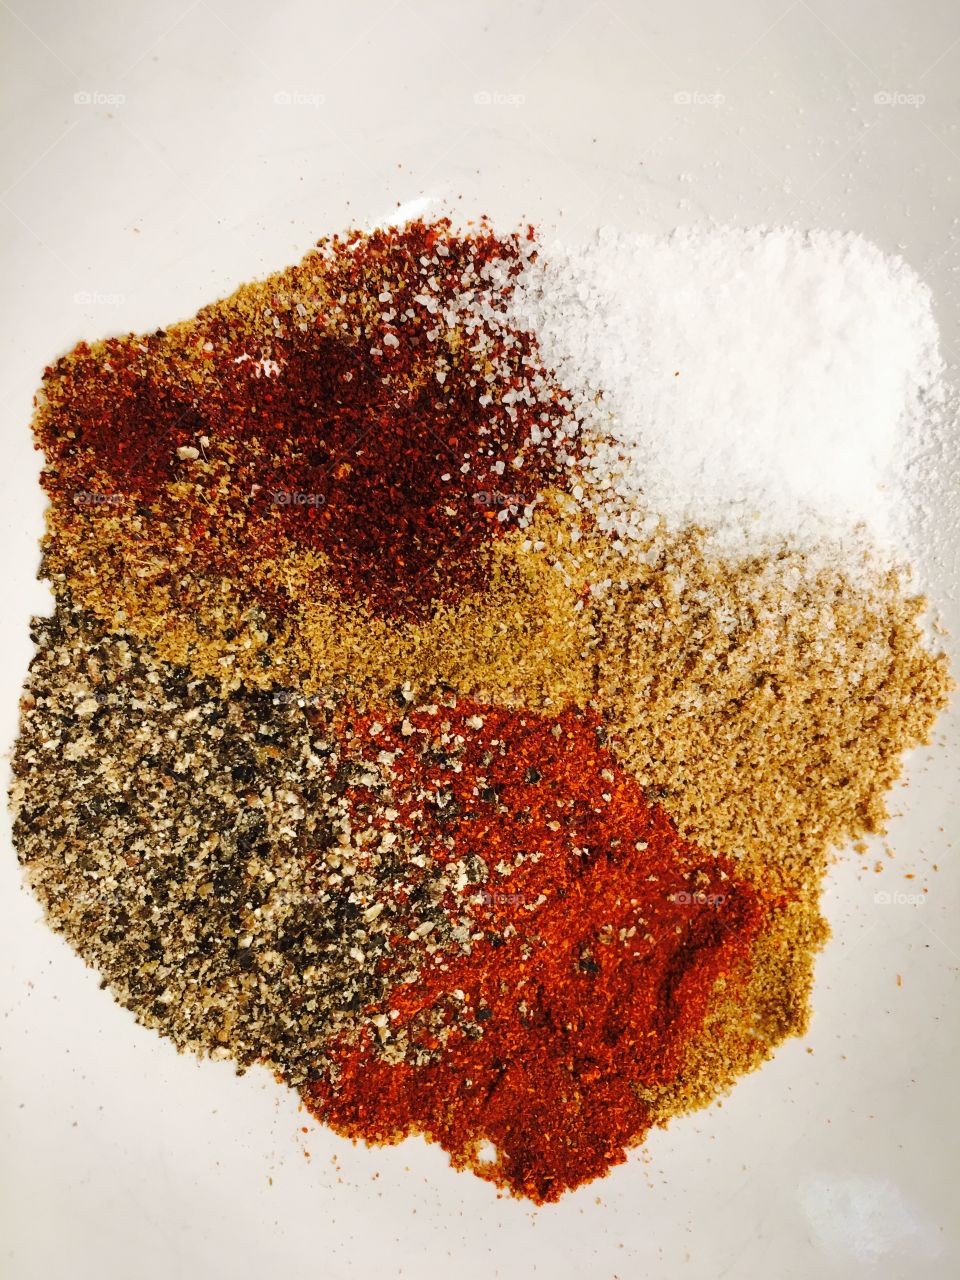 Chili spices